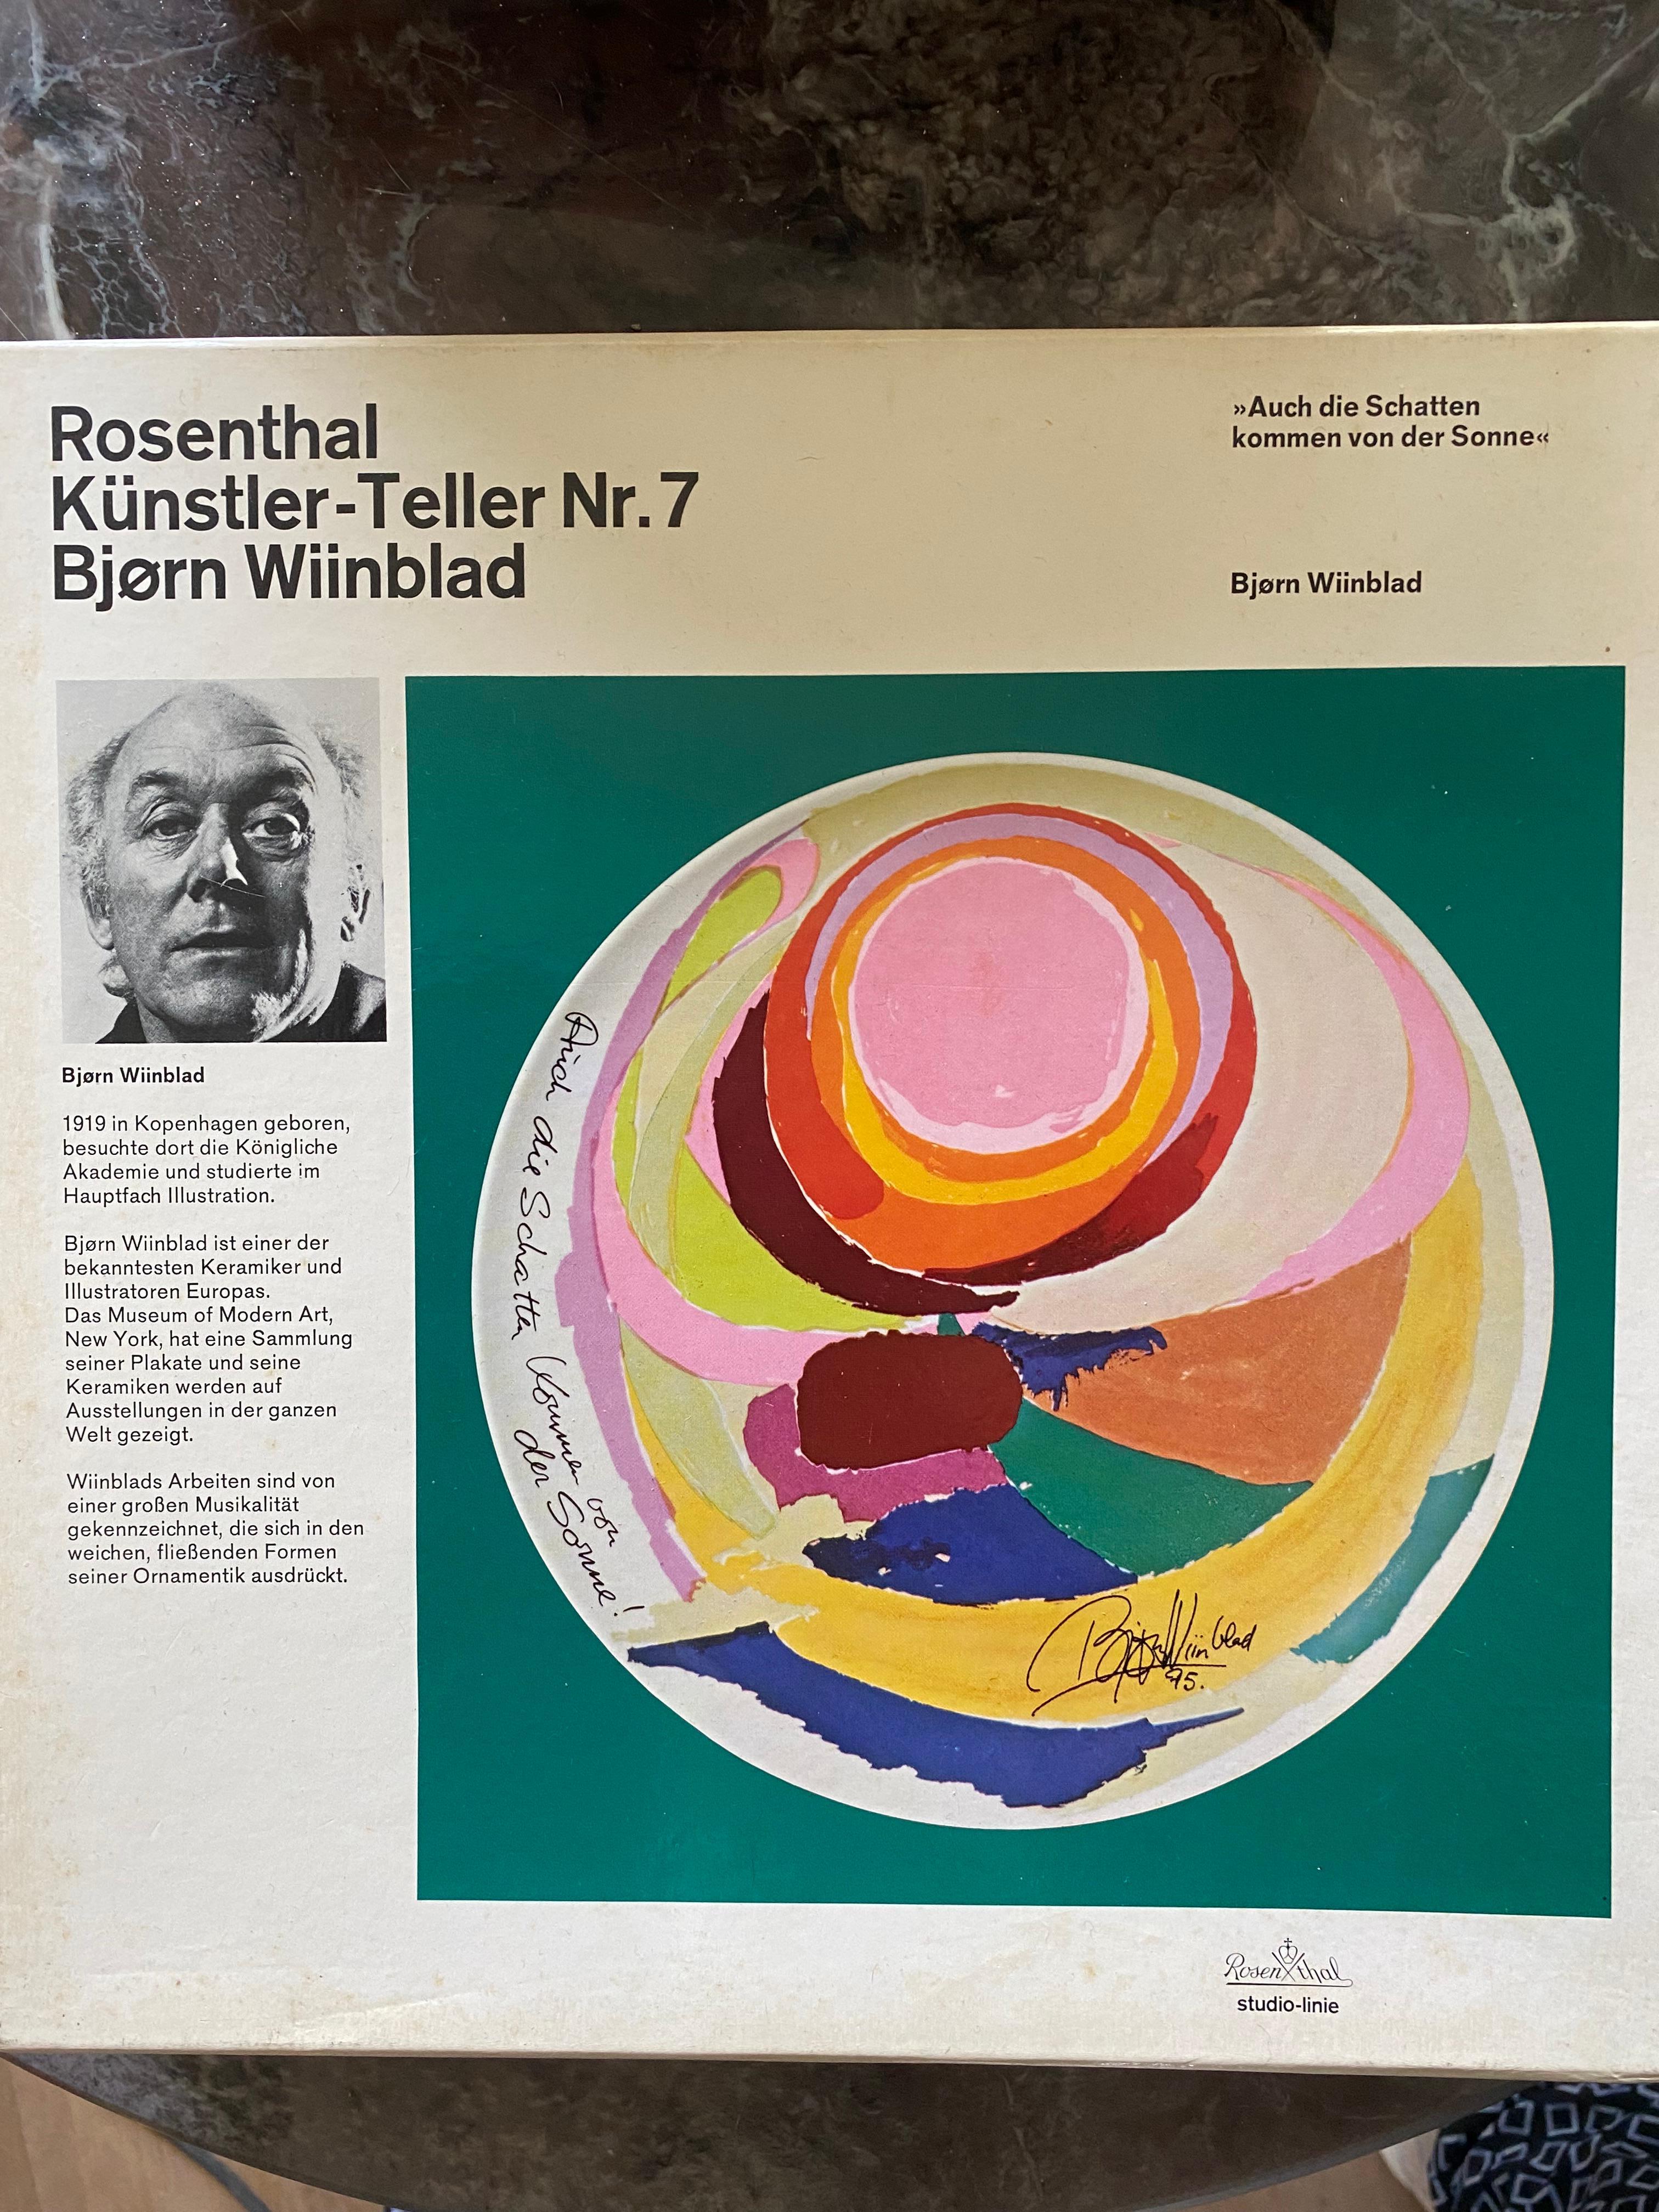 Superbe plaque murale de Bjorn
Wiinblad pour Rosenthal. Le site  La plaque a été produite en 1975 dans une édition de 5000 exemplaires, et celui-ci est le numéro 1328. 

Le texte de la plaque est en allemand 